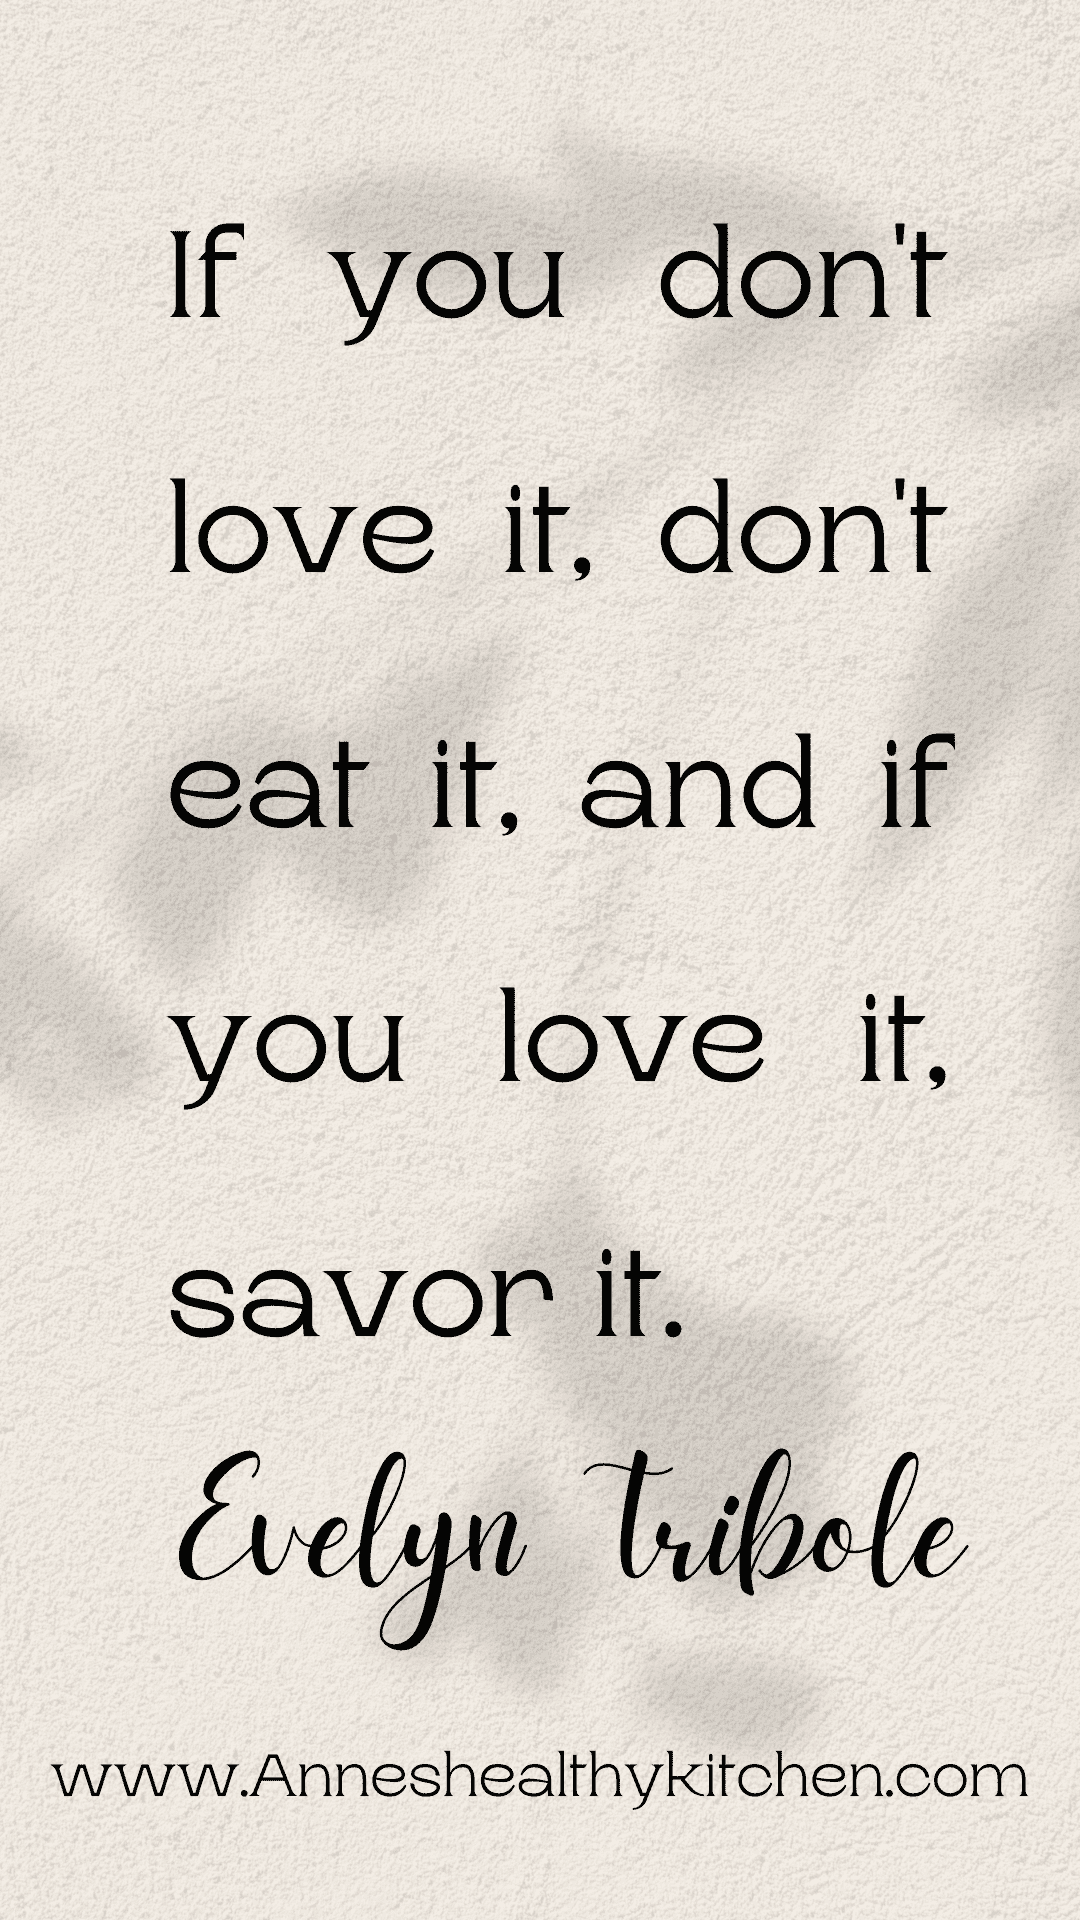 If you don't love it, don't eat it. And you if love it, savor it